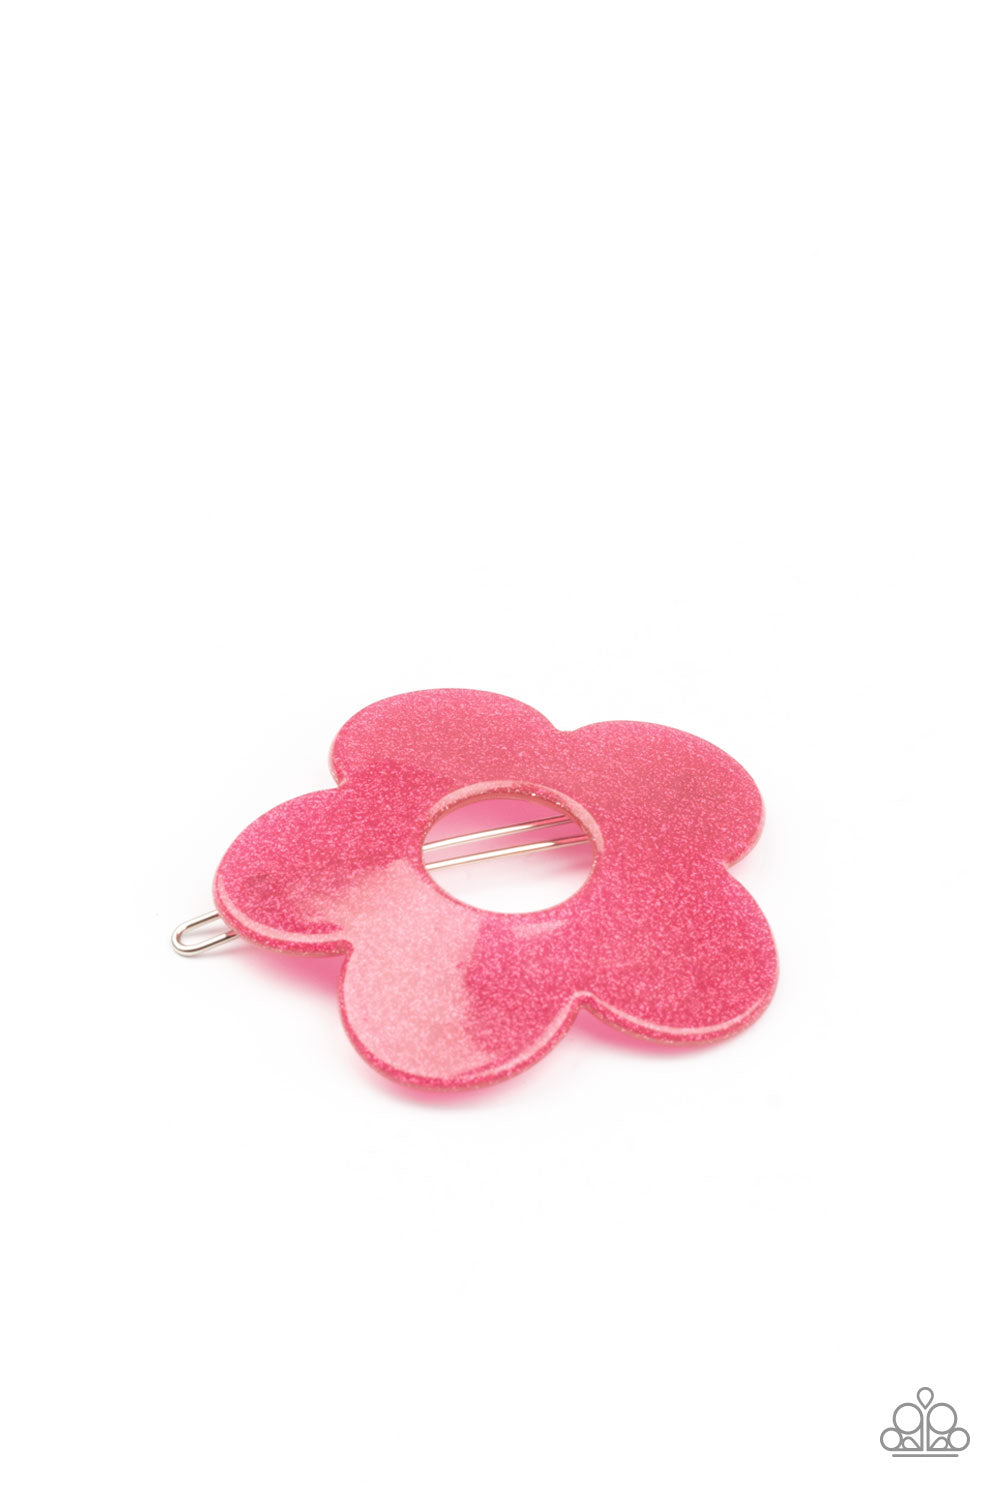 Flower Child Garden - Pink Hair Accessory Paparazzi Accessories